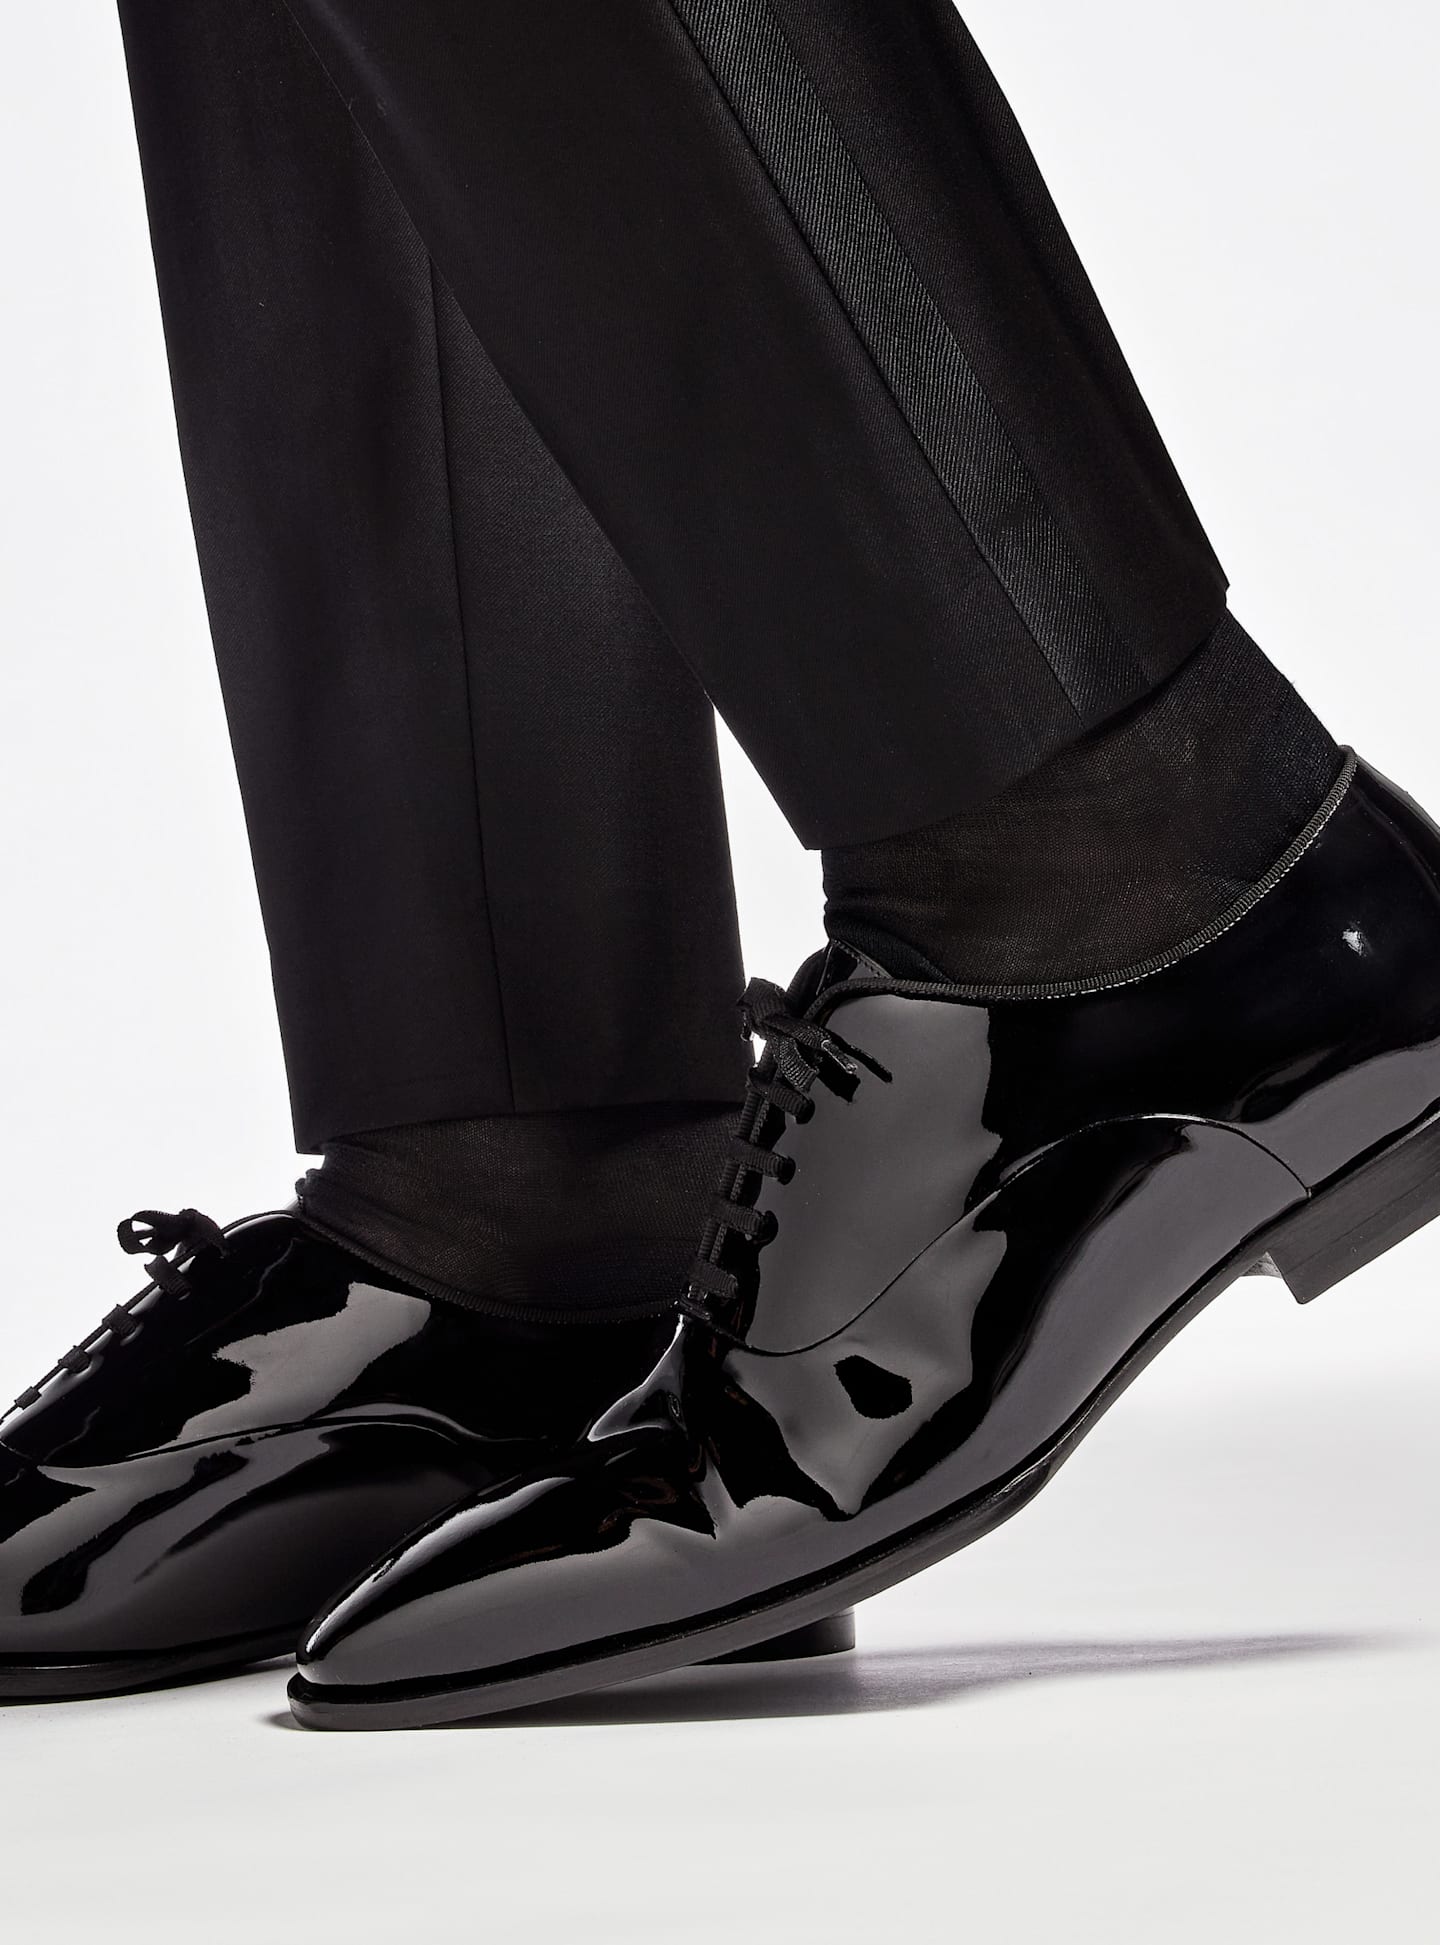 Zbliżenie na buty smokingowe z czarnej lakierowanej skóry.